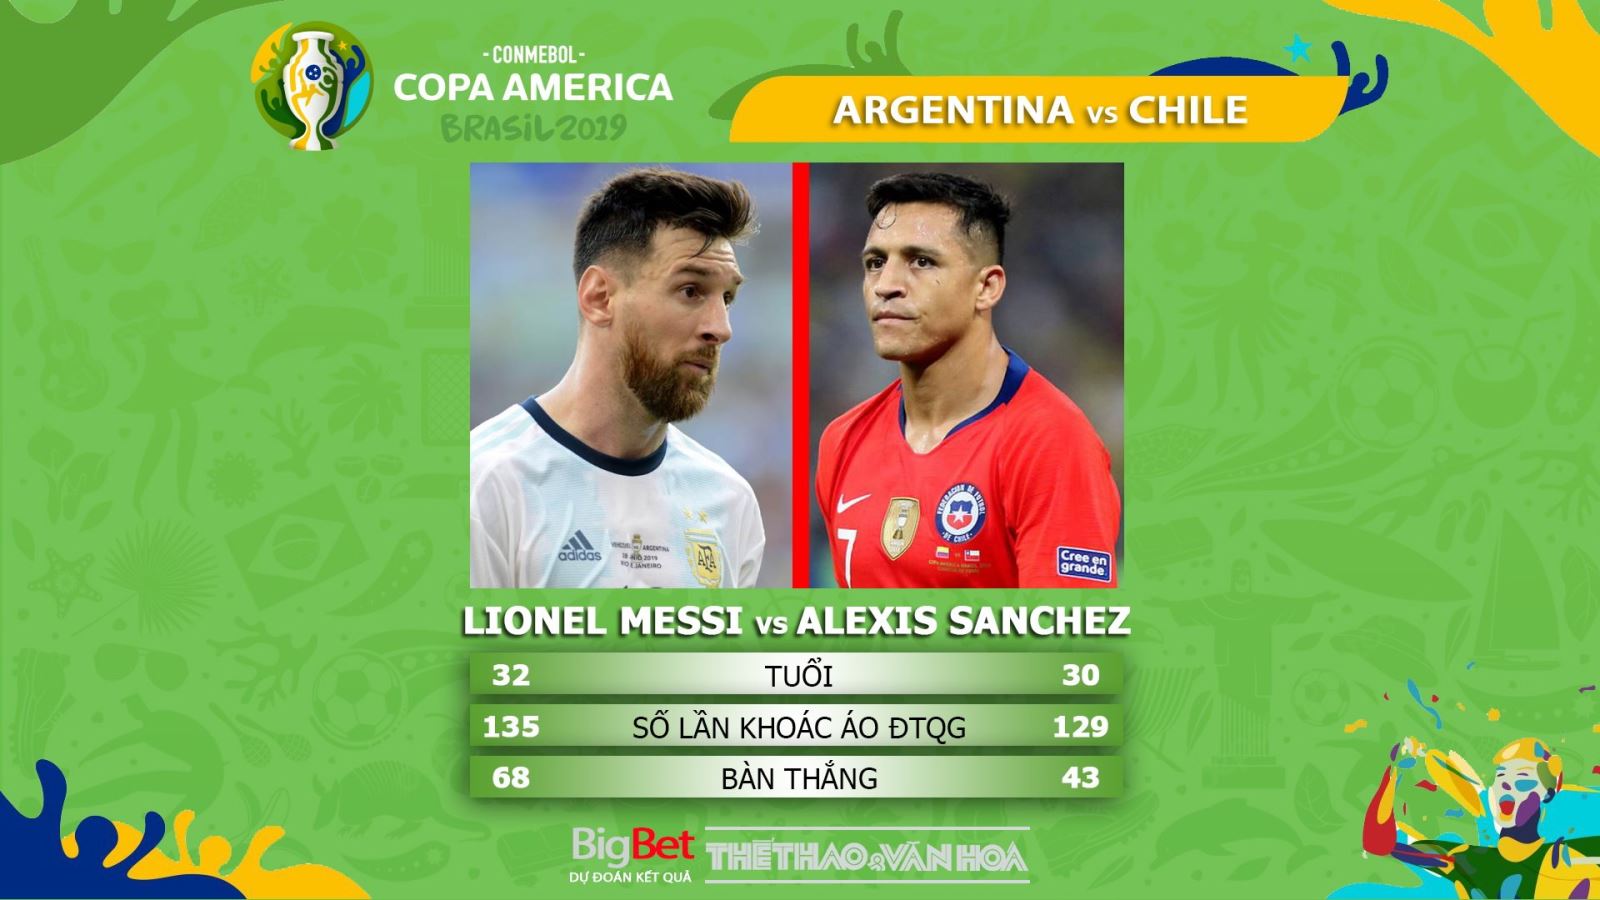 trực tiếp bóng đá, soi kèo Argentina vs Chile, trực tiếp bóng đá hôm nay, Argentina đấu với Chile, truc tiep bong da, Argentina vs Chile, kèo bóng đá, Copa America 2019